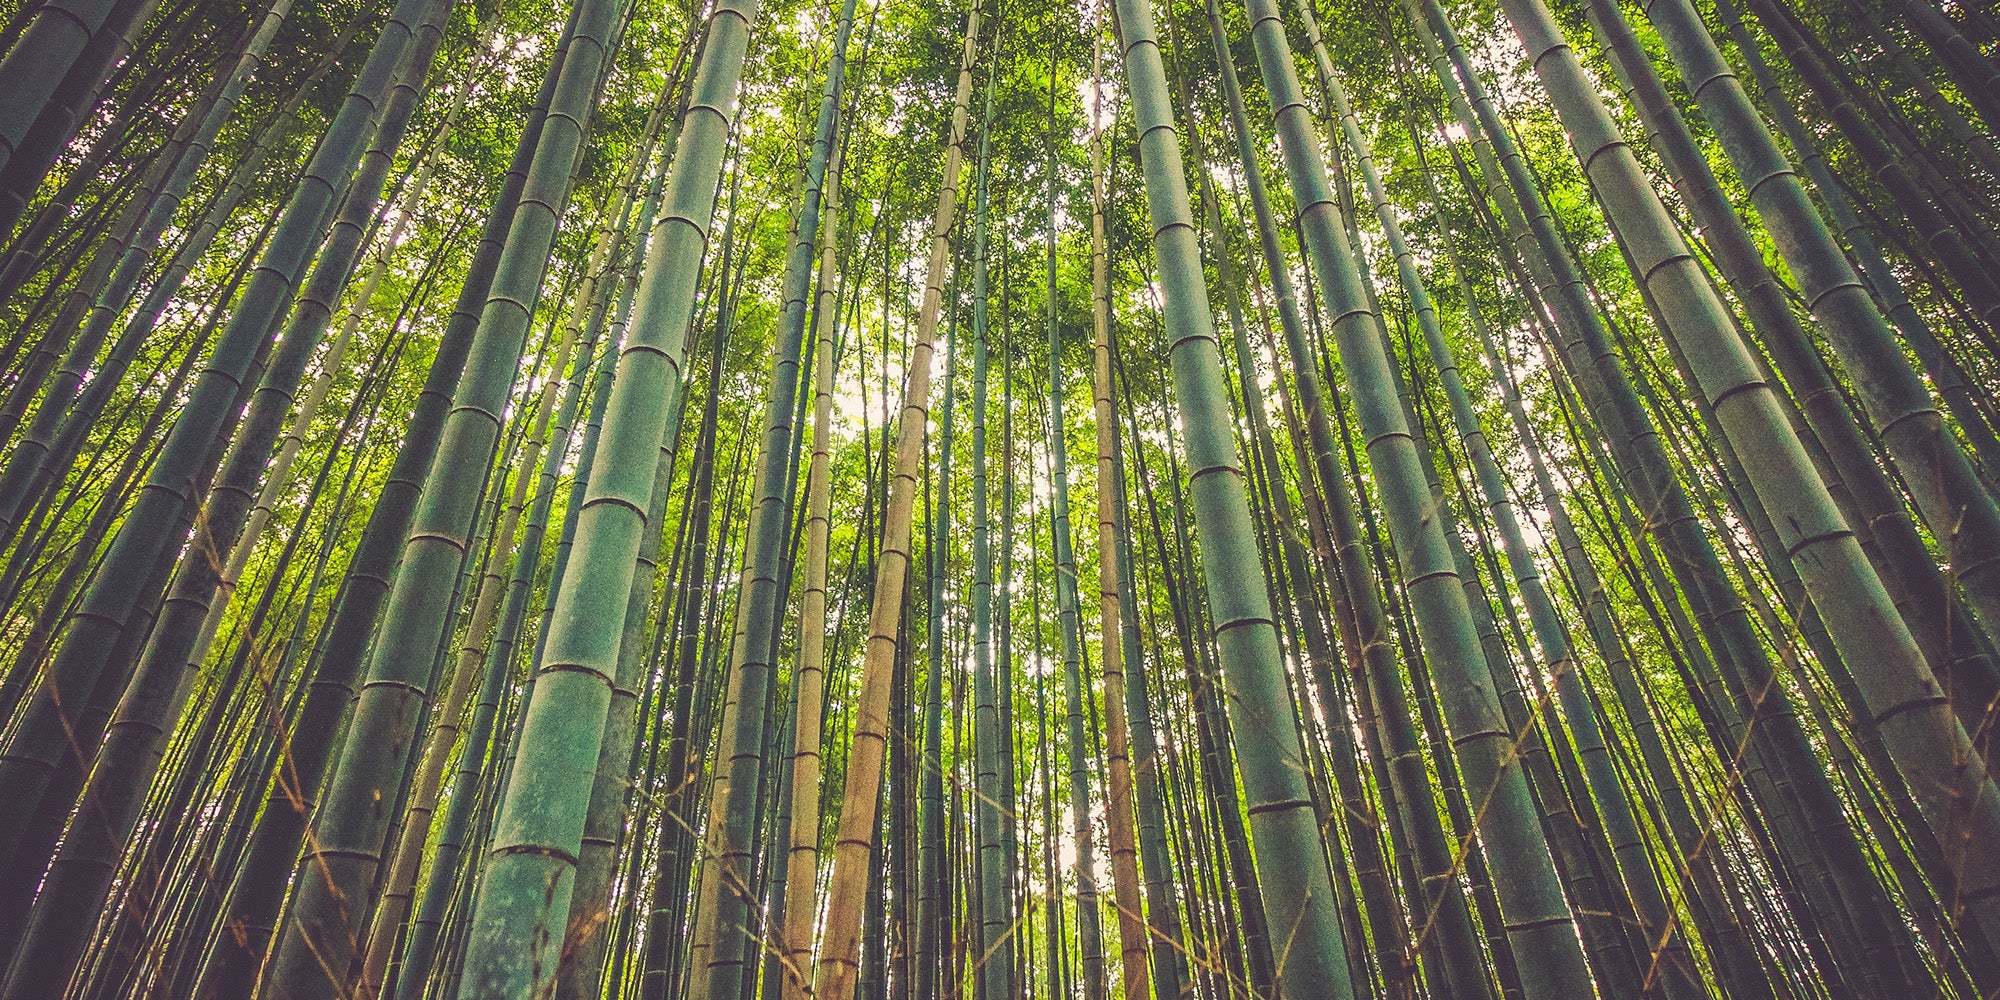 Bois de bambou : pourquoi utiliser le bambou comme bois